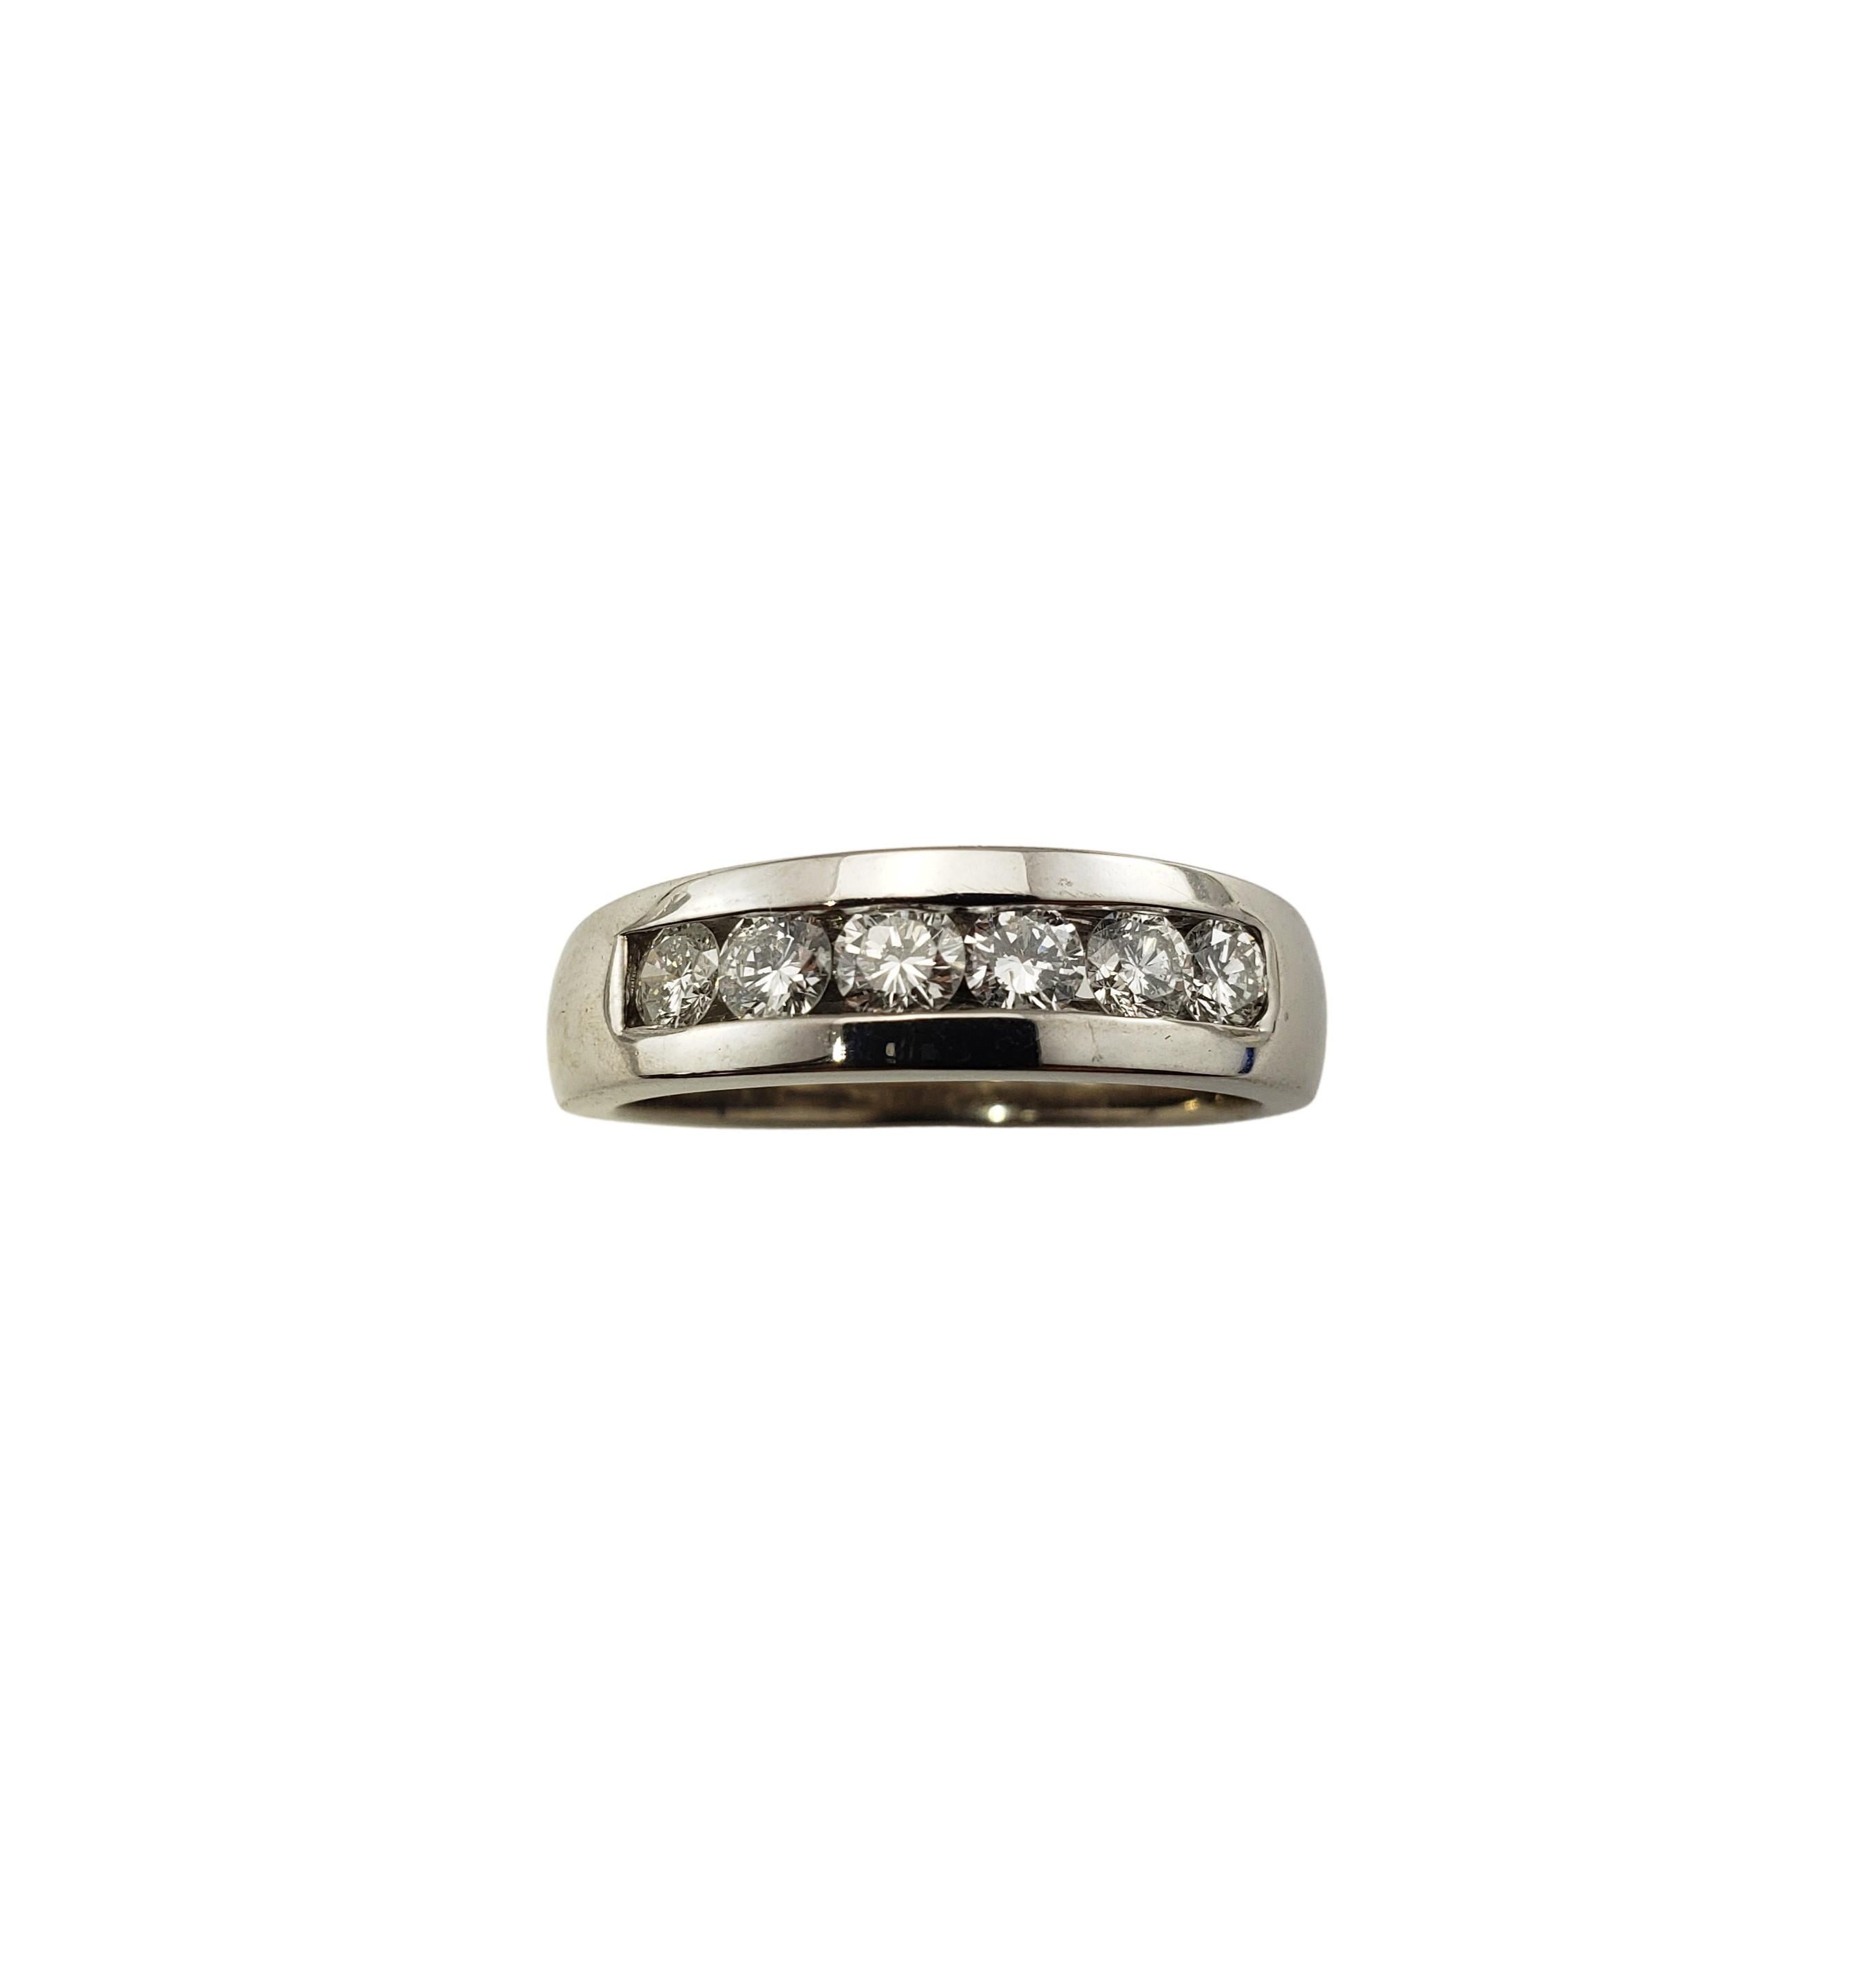 Vintage 14 Karat White Gold and Diamond Wedding/Anniversary Band Ring Size 8.25-

Ce bracelet étincelant présente six diamants ronds de taille brillante sertis dans de l'or blanc 14K classique.  Largeur :  5,5 mm.  Tige : 3.5 mm.

Poids total